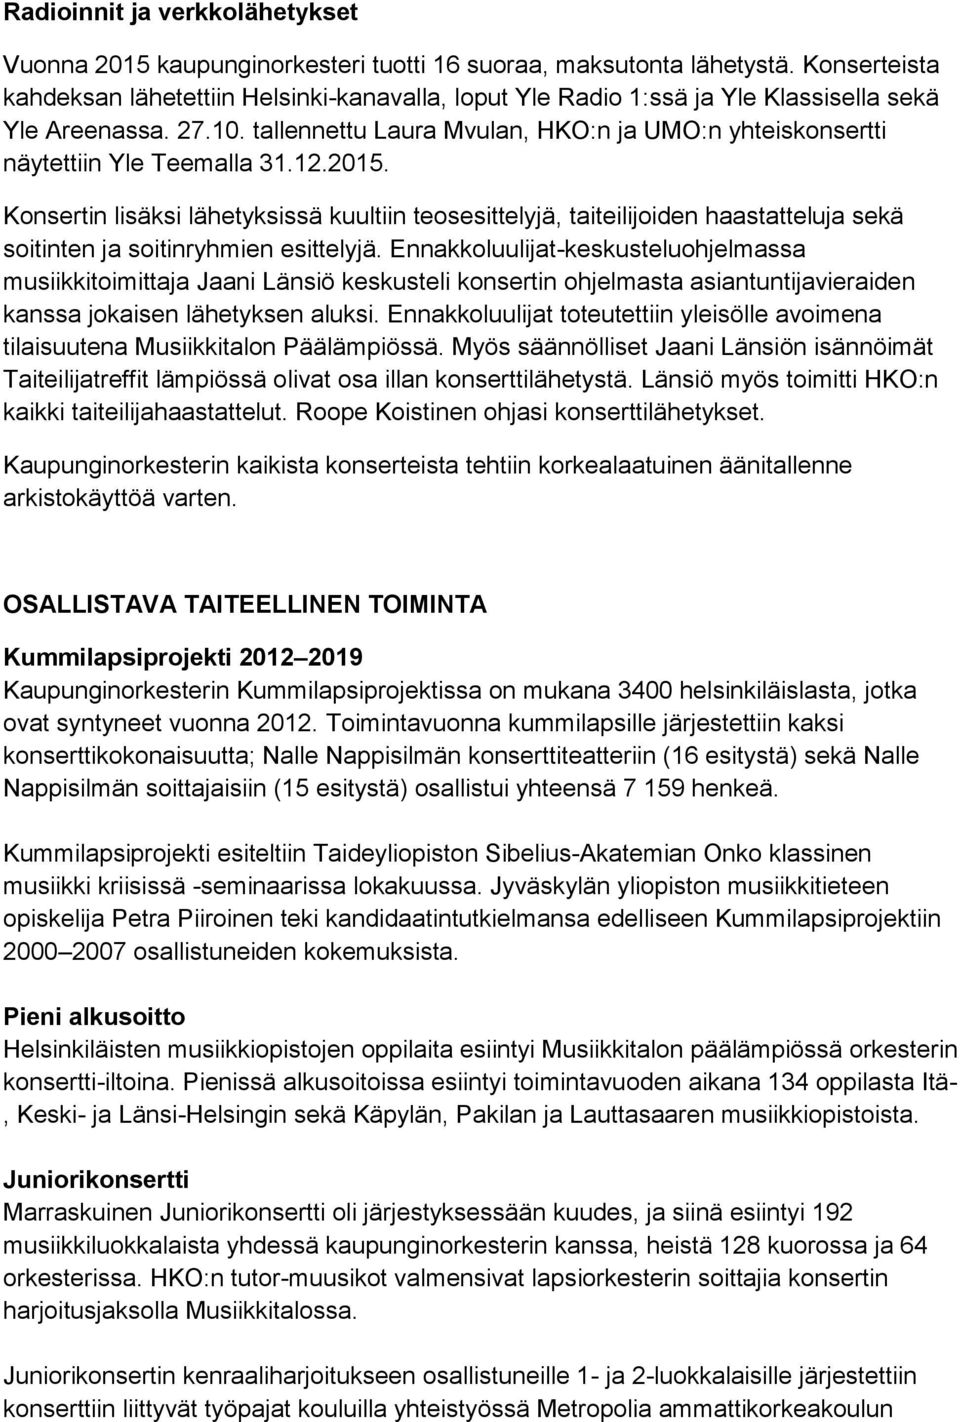 tallennettu Laura Mvulan, HKO:n ja UMO:n yhteiskonsertti näytettiin Yle Teemalla 31.12.2015.